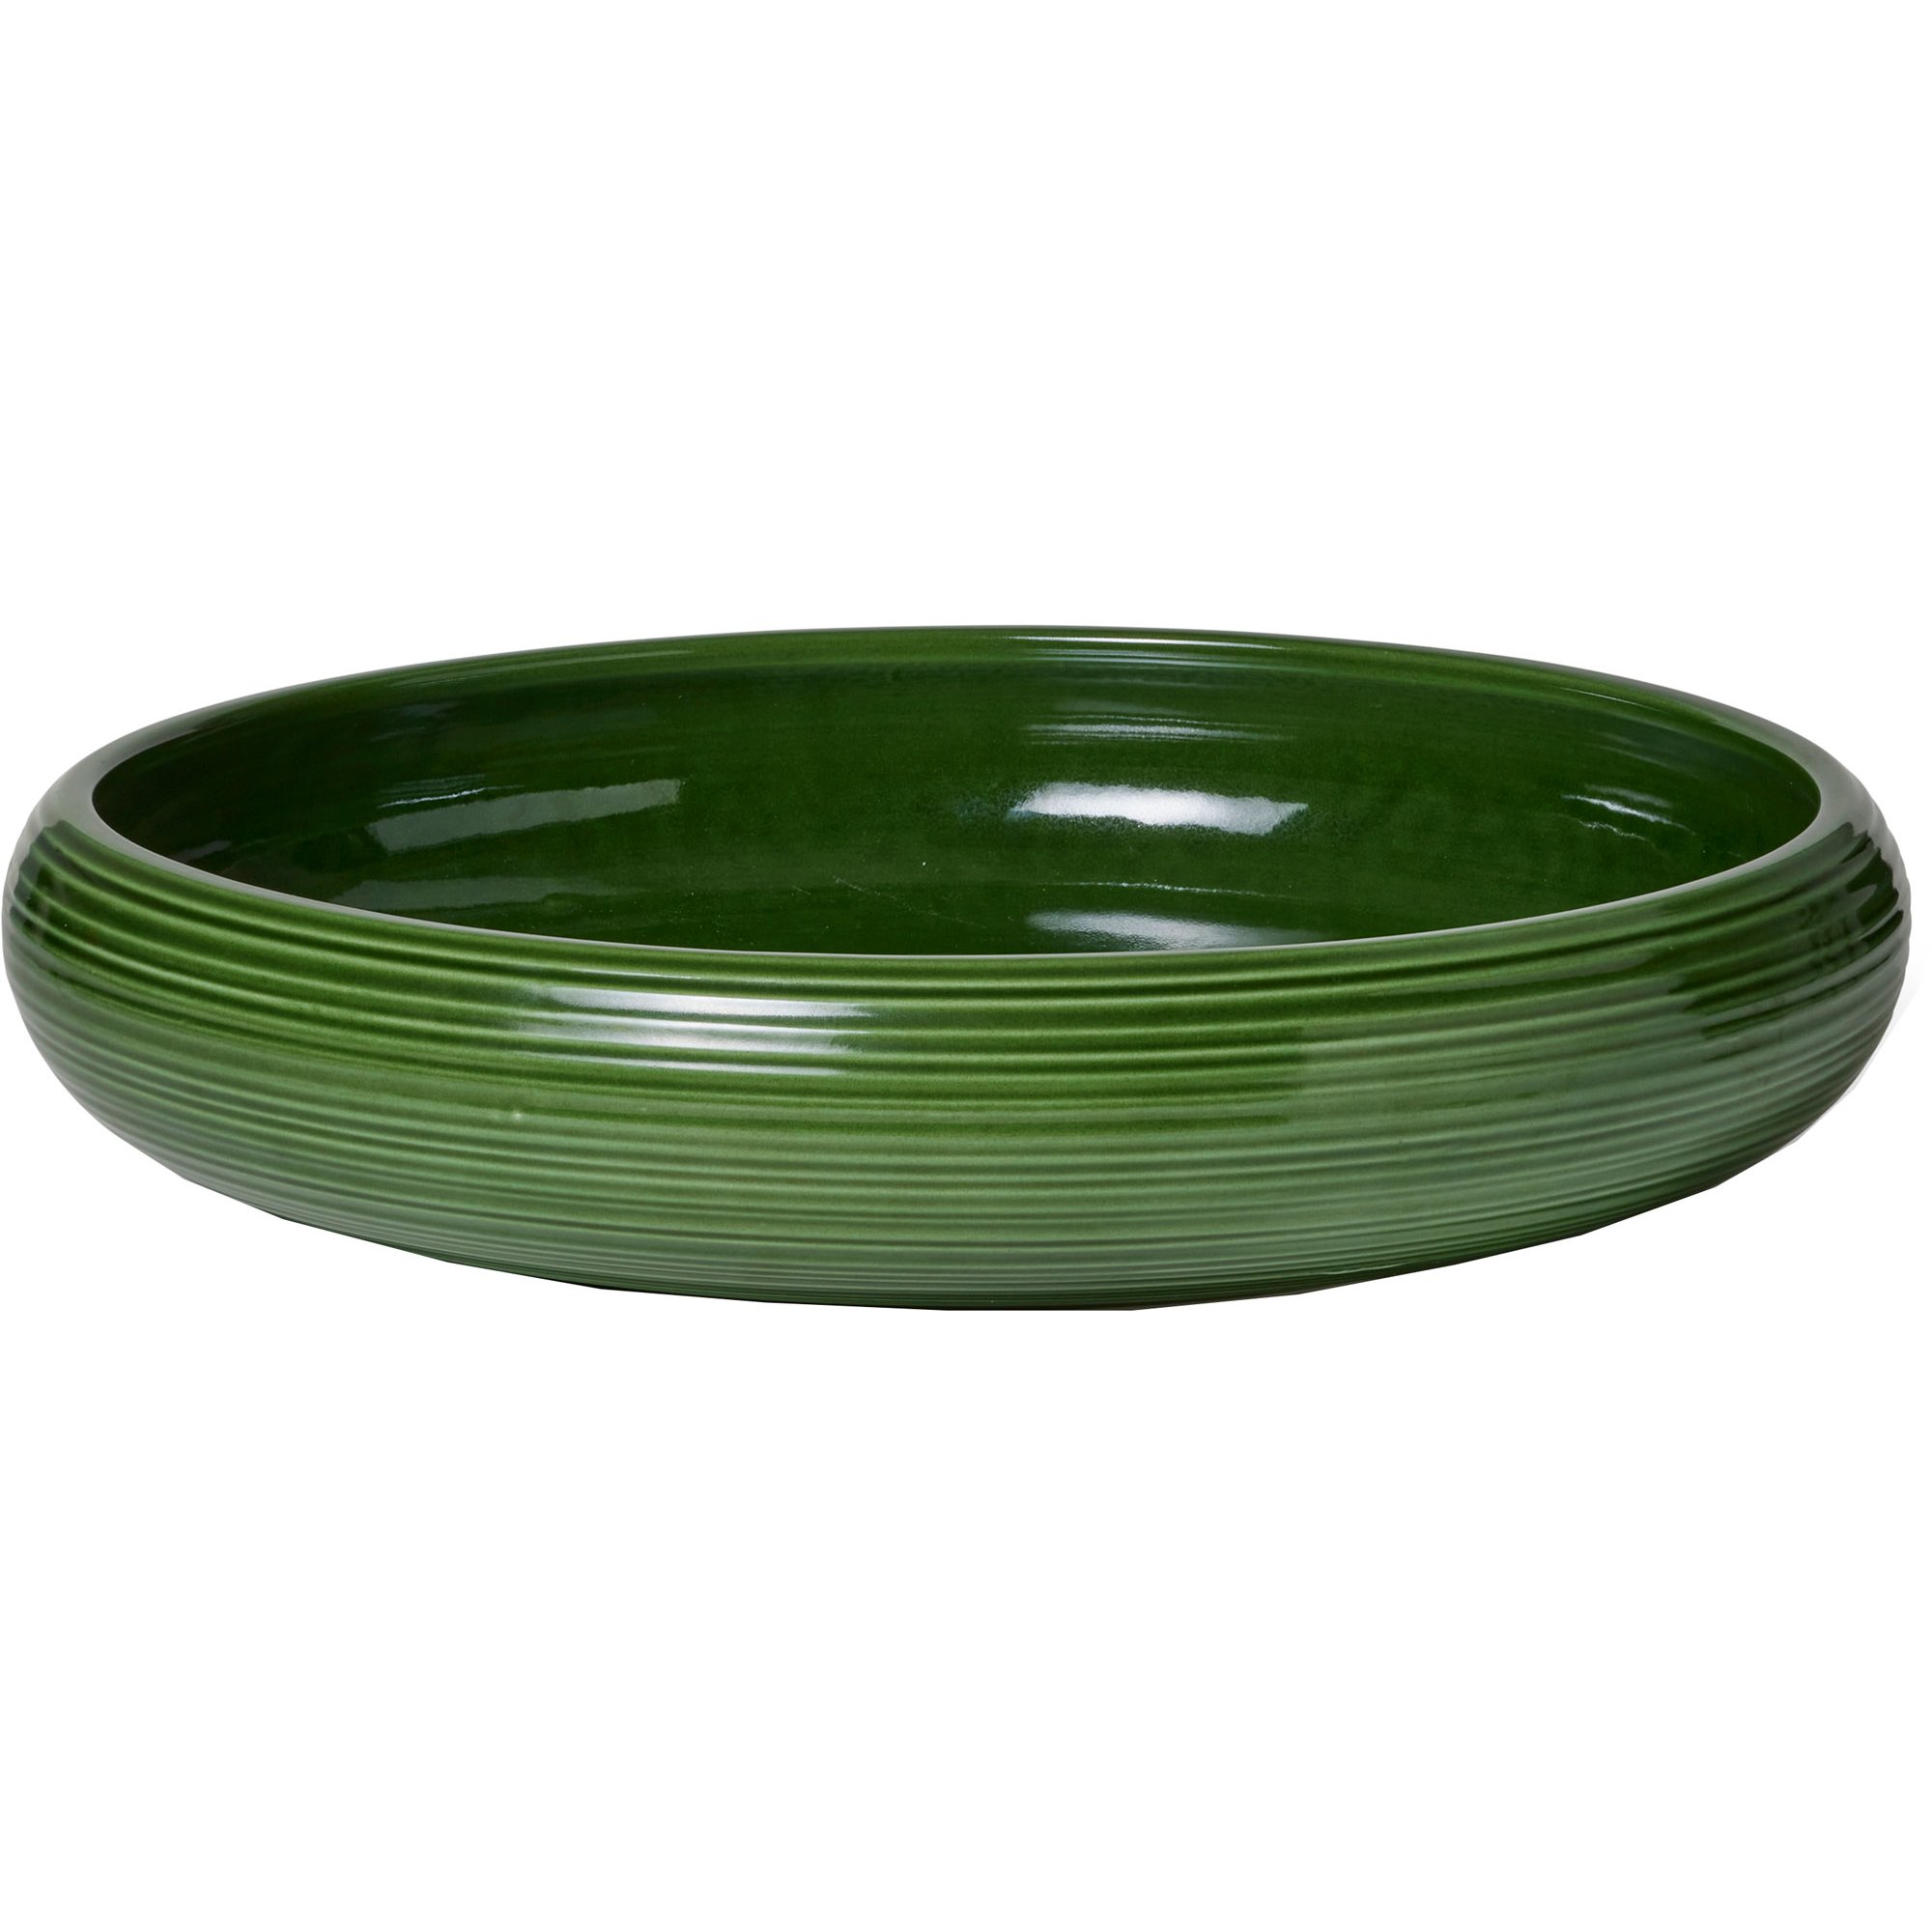 6: Kähler Colore skål, 34 cm, sage green